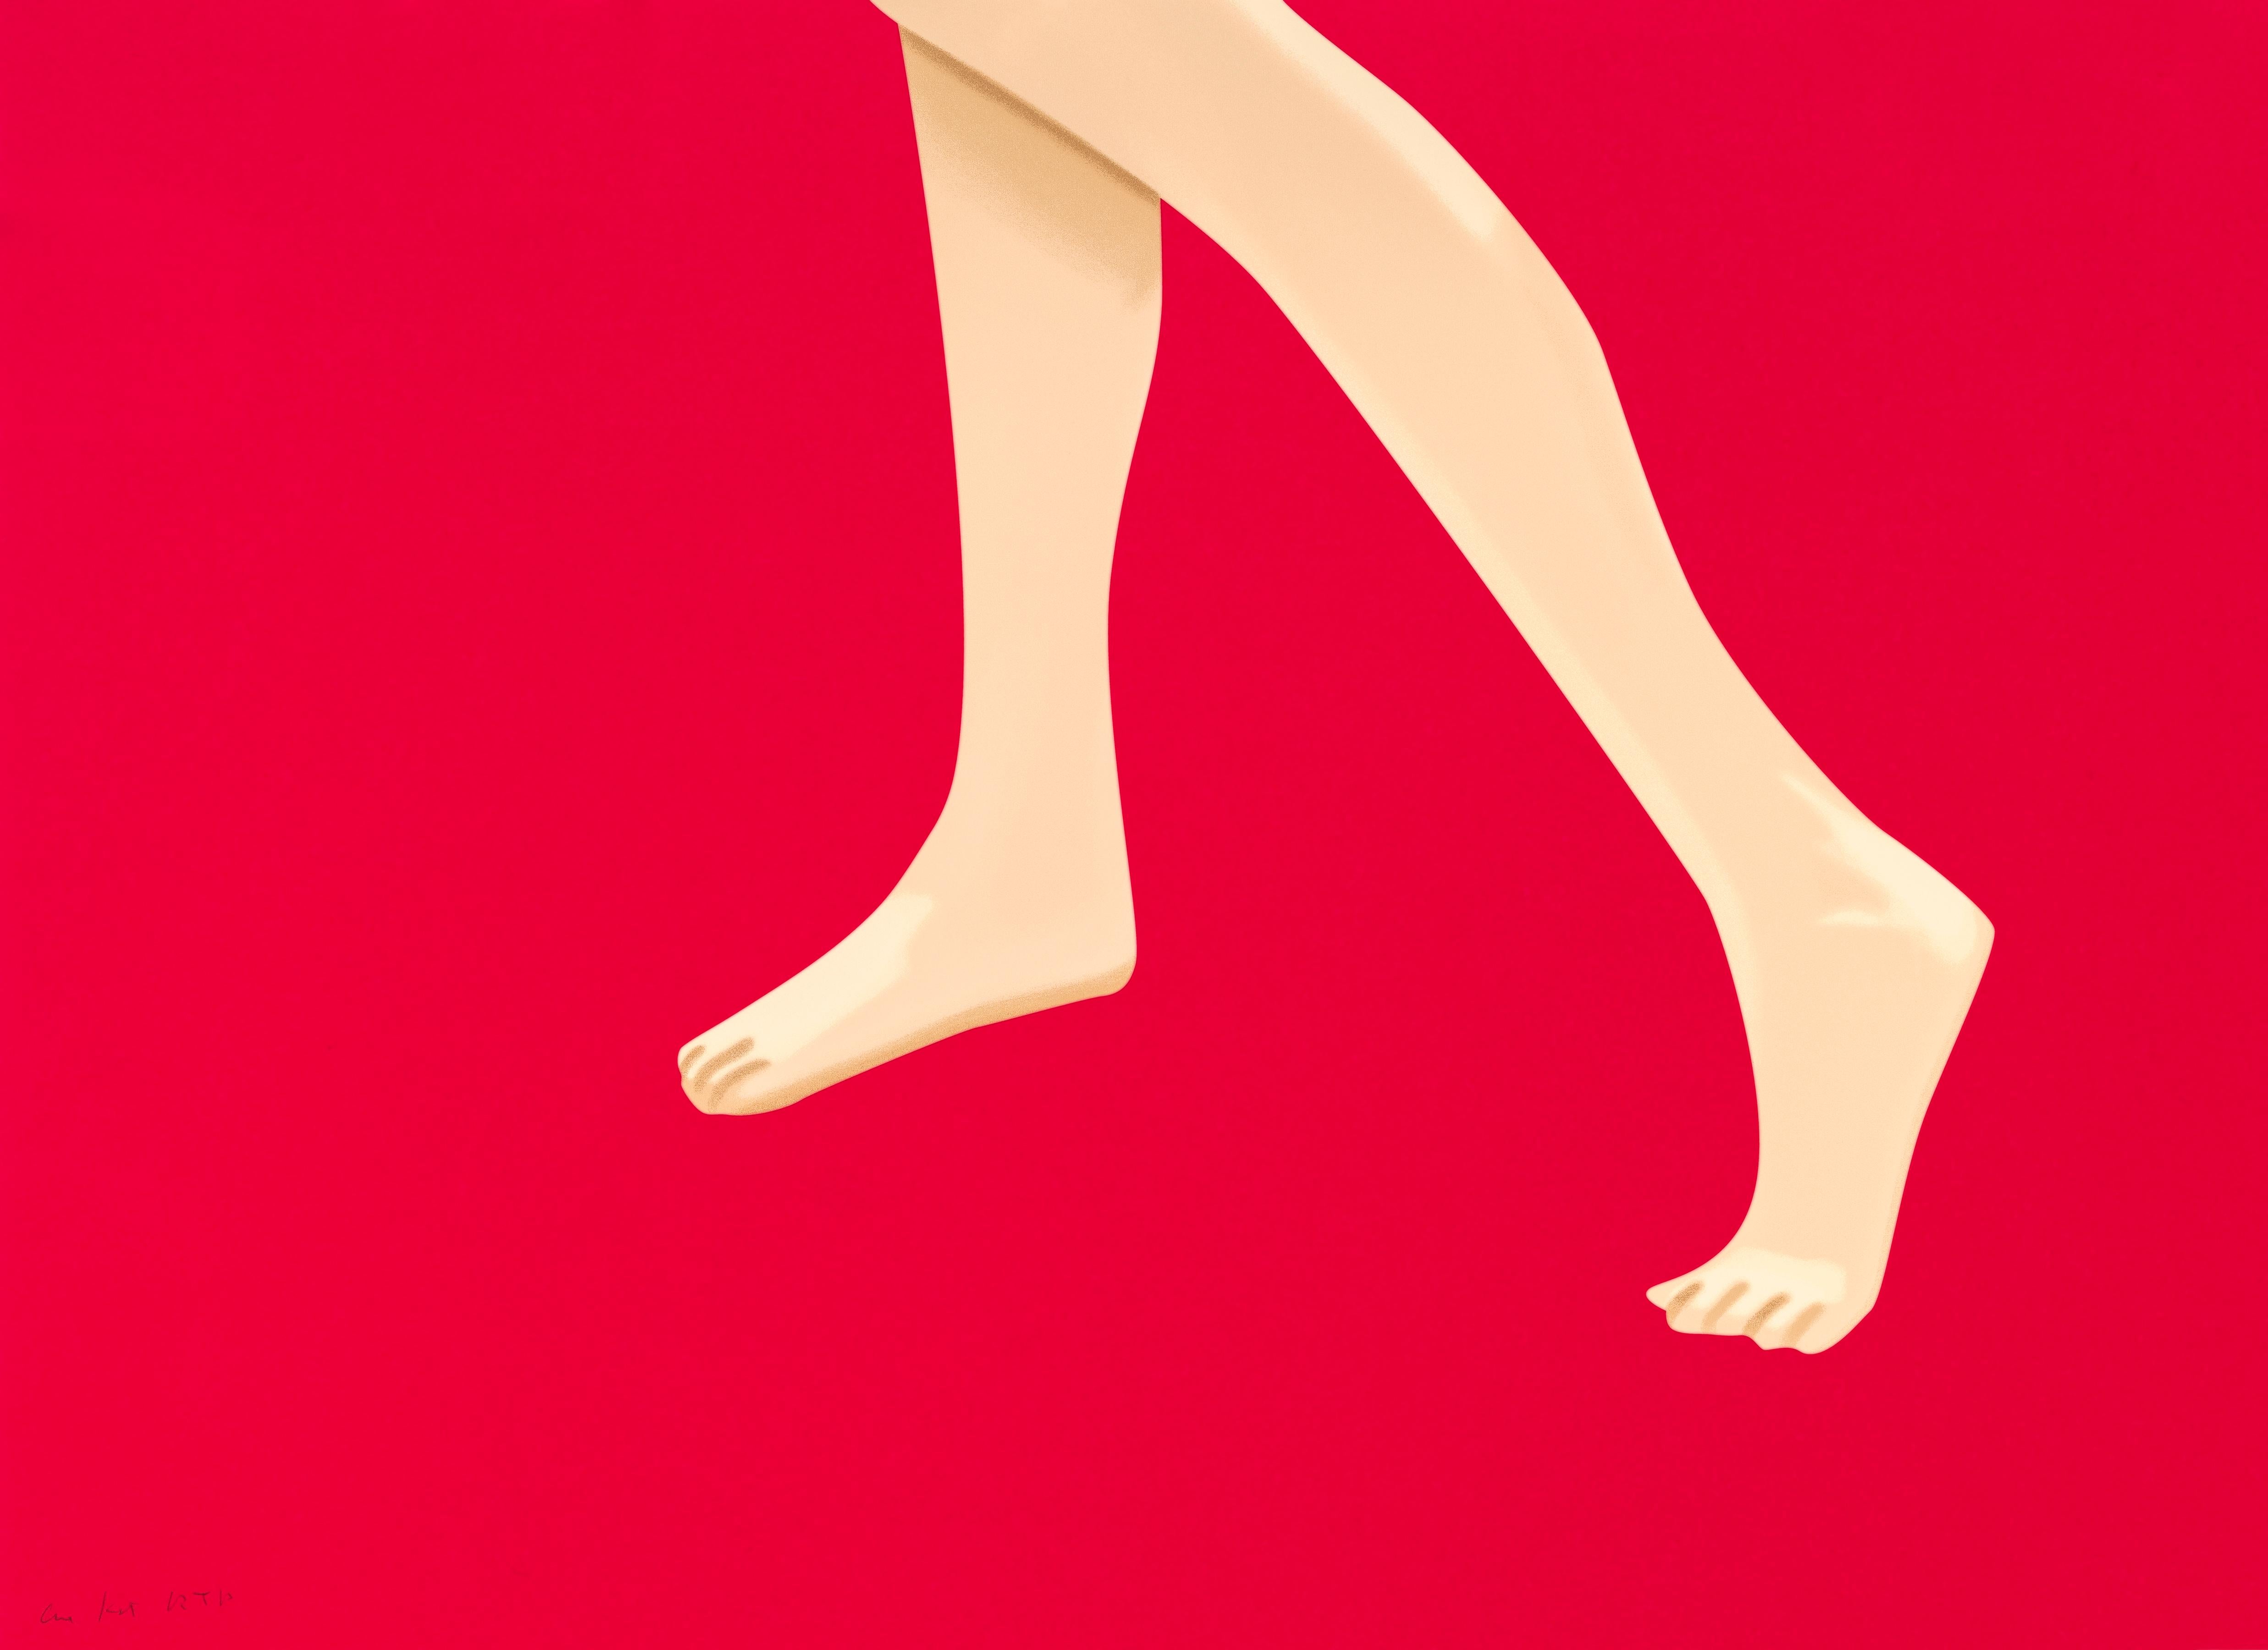 "Coca-Cola Girl 8" ist ein ganz besonderes Exemplar aus der Coca-Cola Girl Serie von Alex Katz. Diese Figuren zeugen von seiner tiefen Auseinandersetzung mit den Ideen der Werbung, der figurativen Kunst und dem Weg zu einer hohen Form der